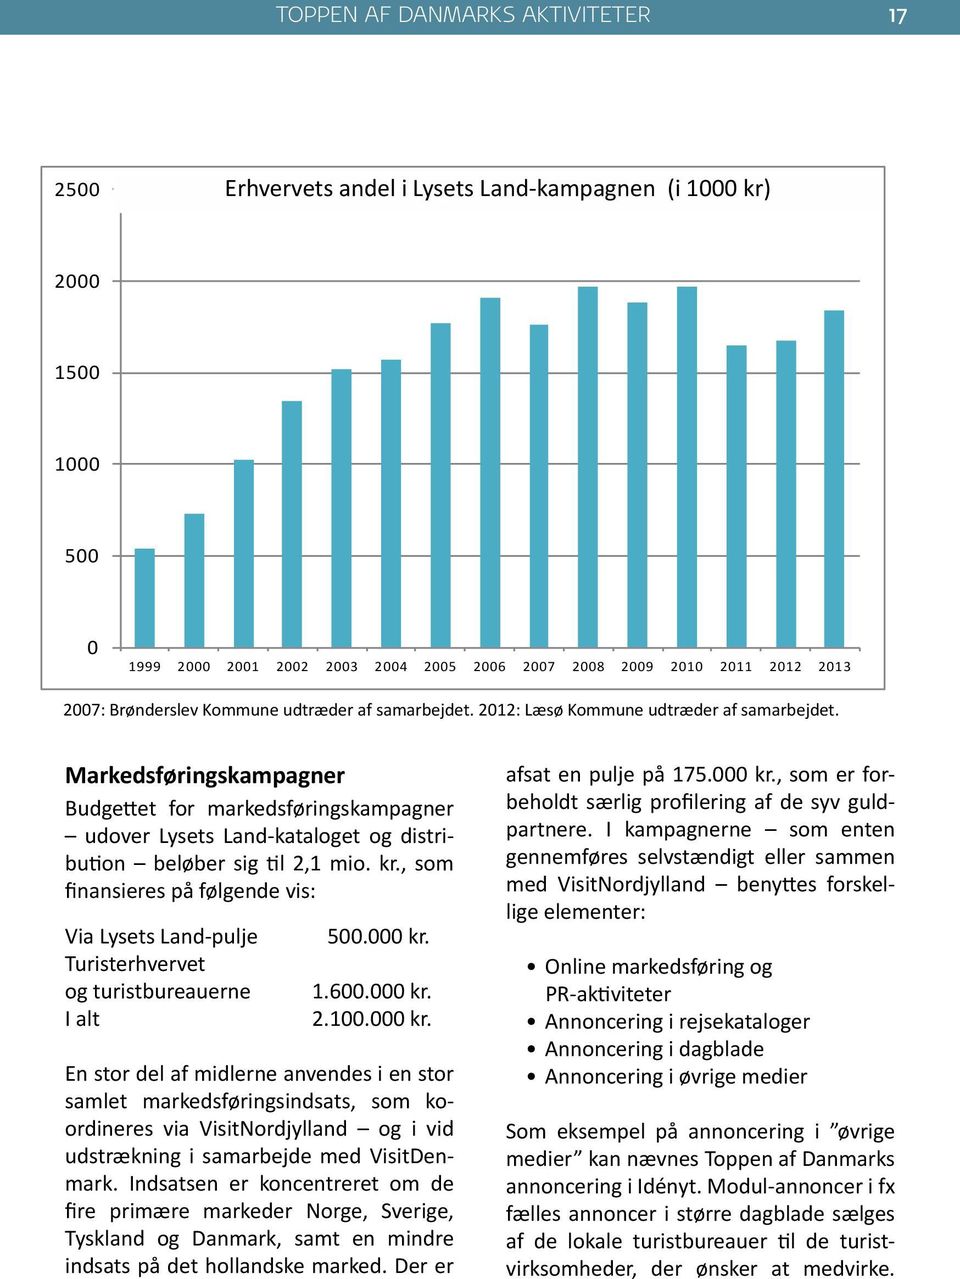 Markedsføringskampagner Budgettet for markedsføringskampagner udover Lysets Land-kataloget og distribution beløber sig til 2,1 mio. kr.